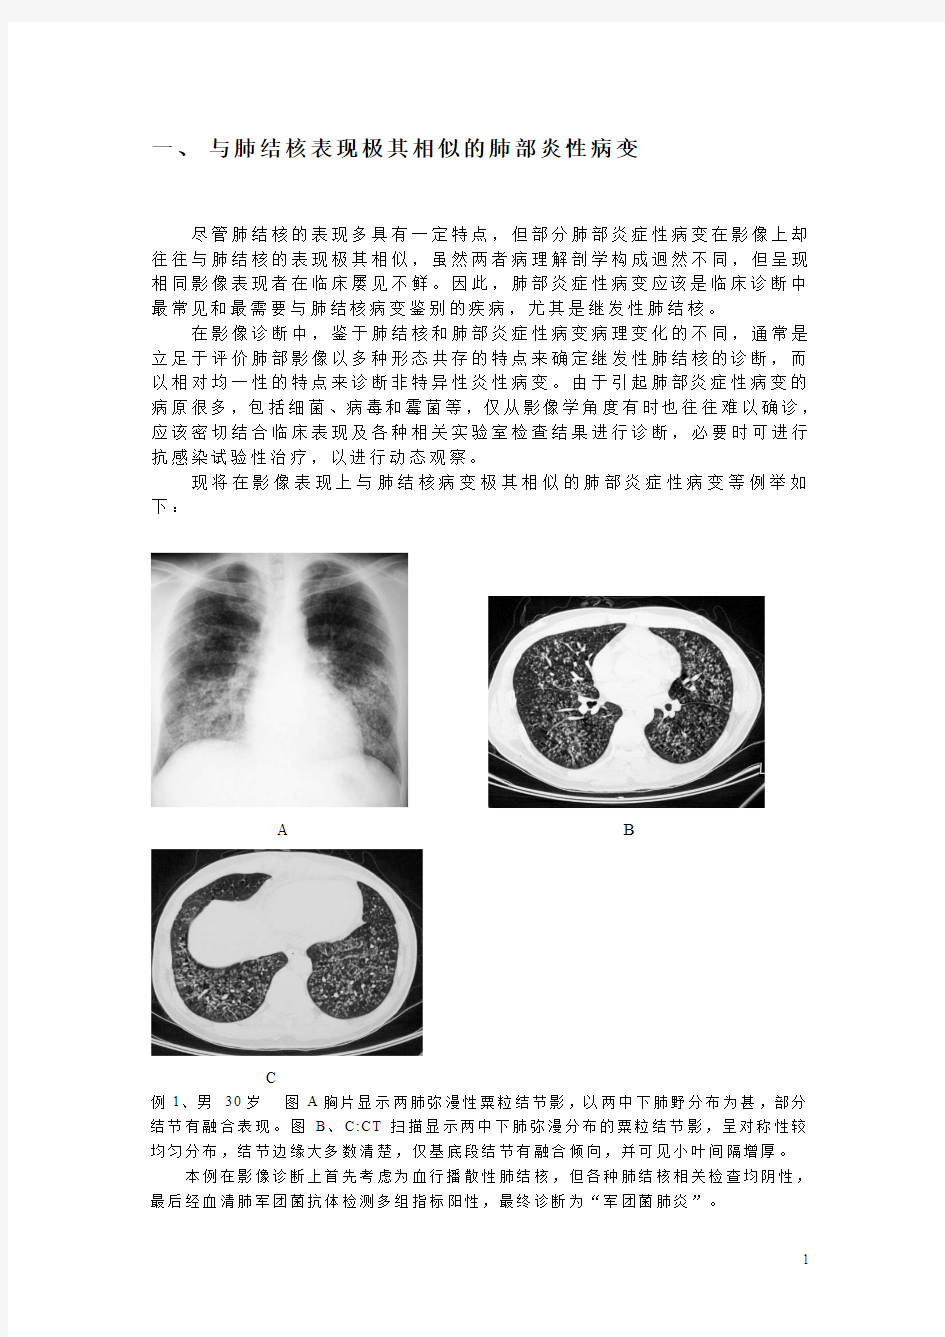 肺结核不典型影像学表现的分析与诊断